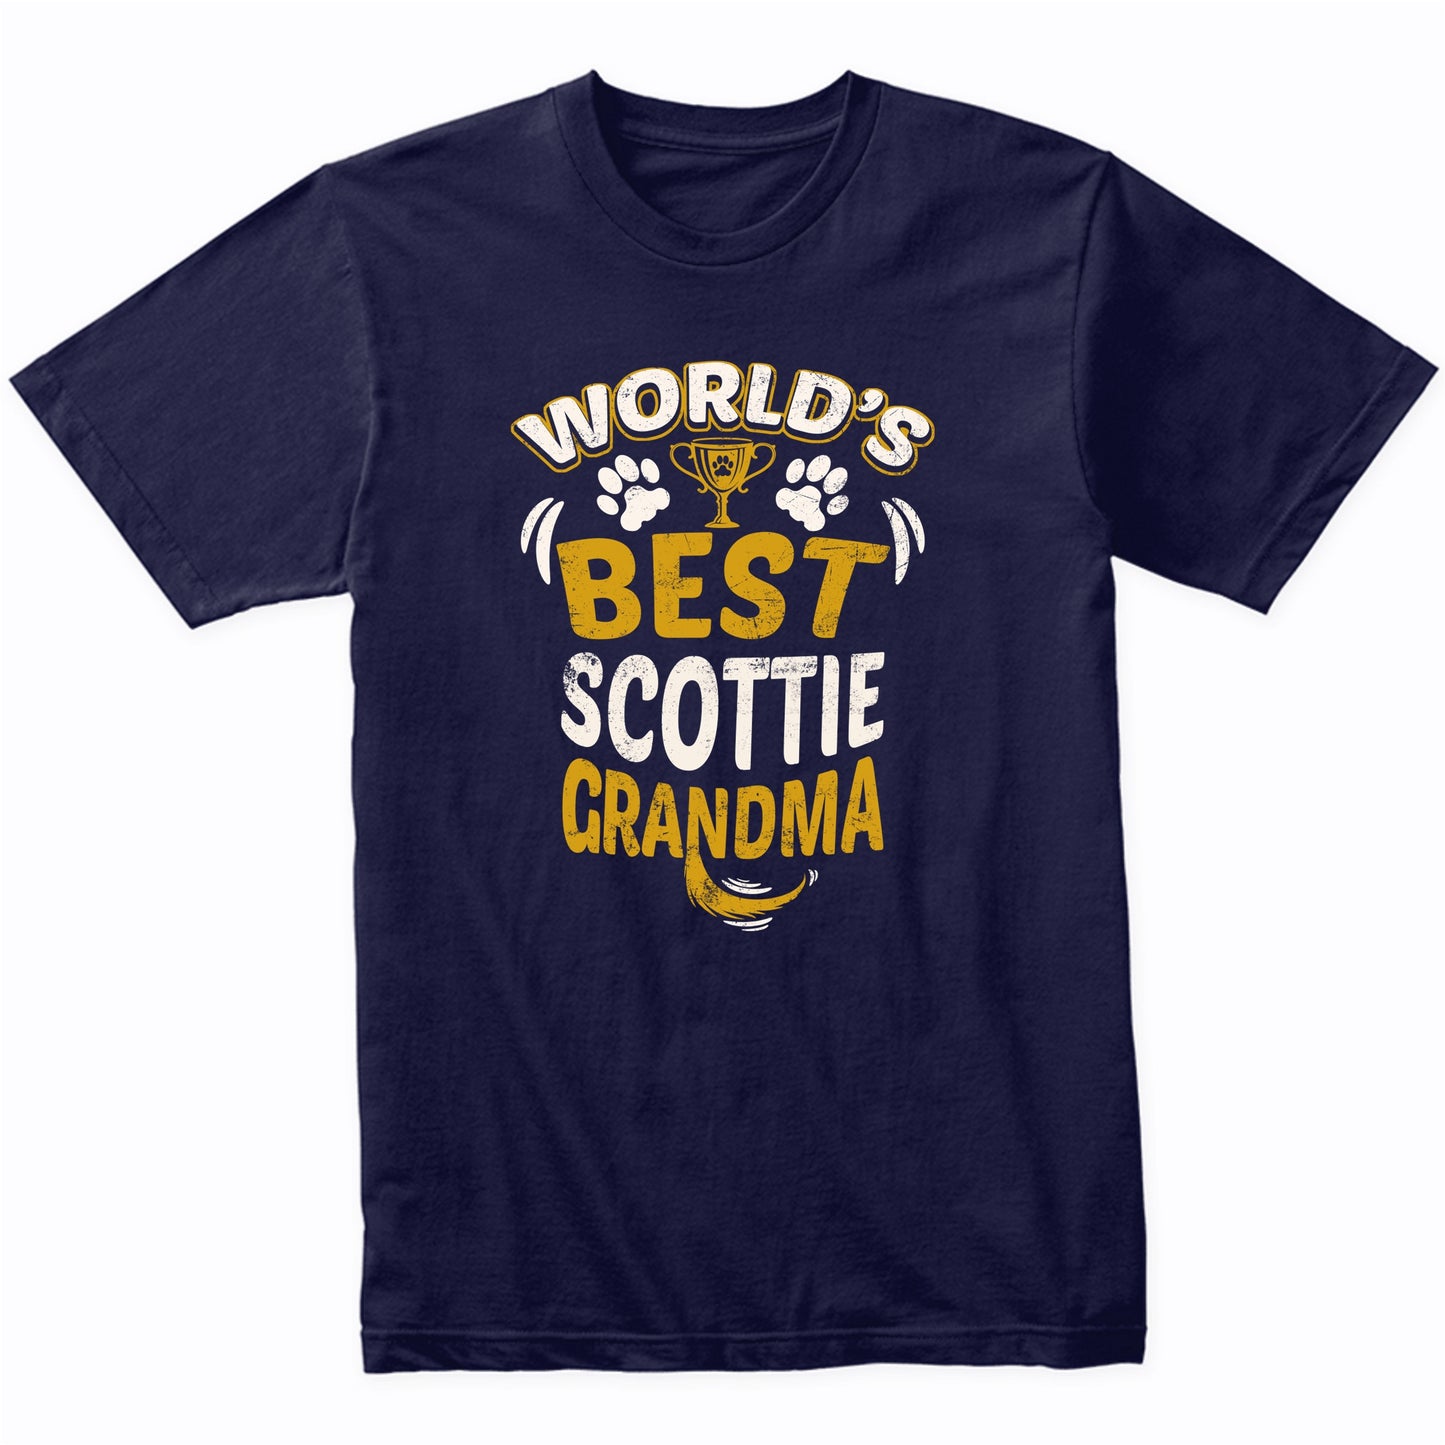 World's Best Scottie Grandma Graphic T-Shirt